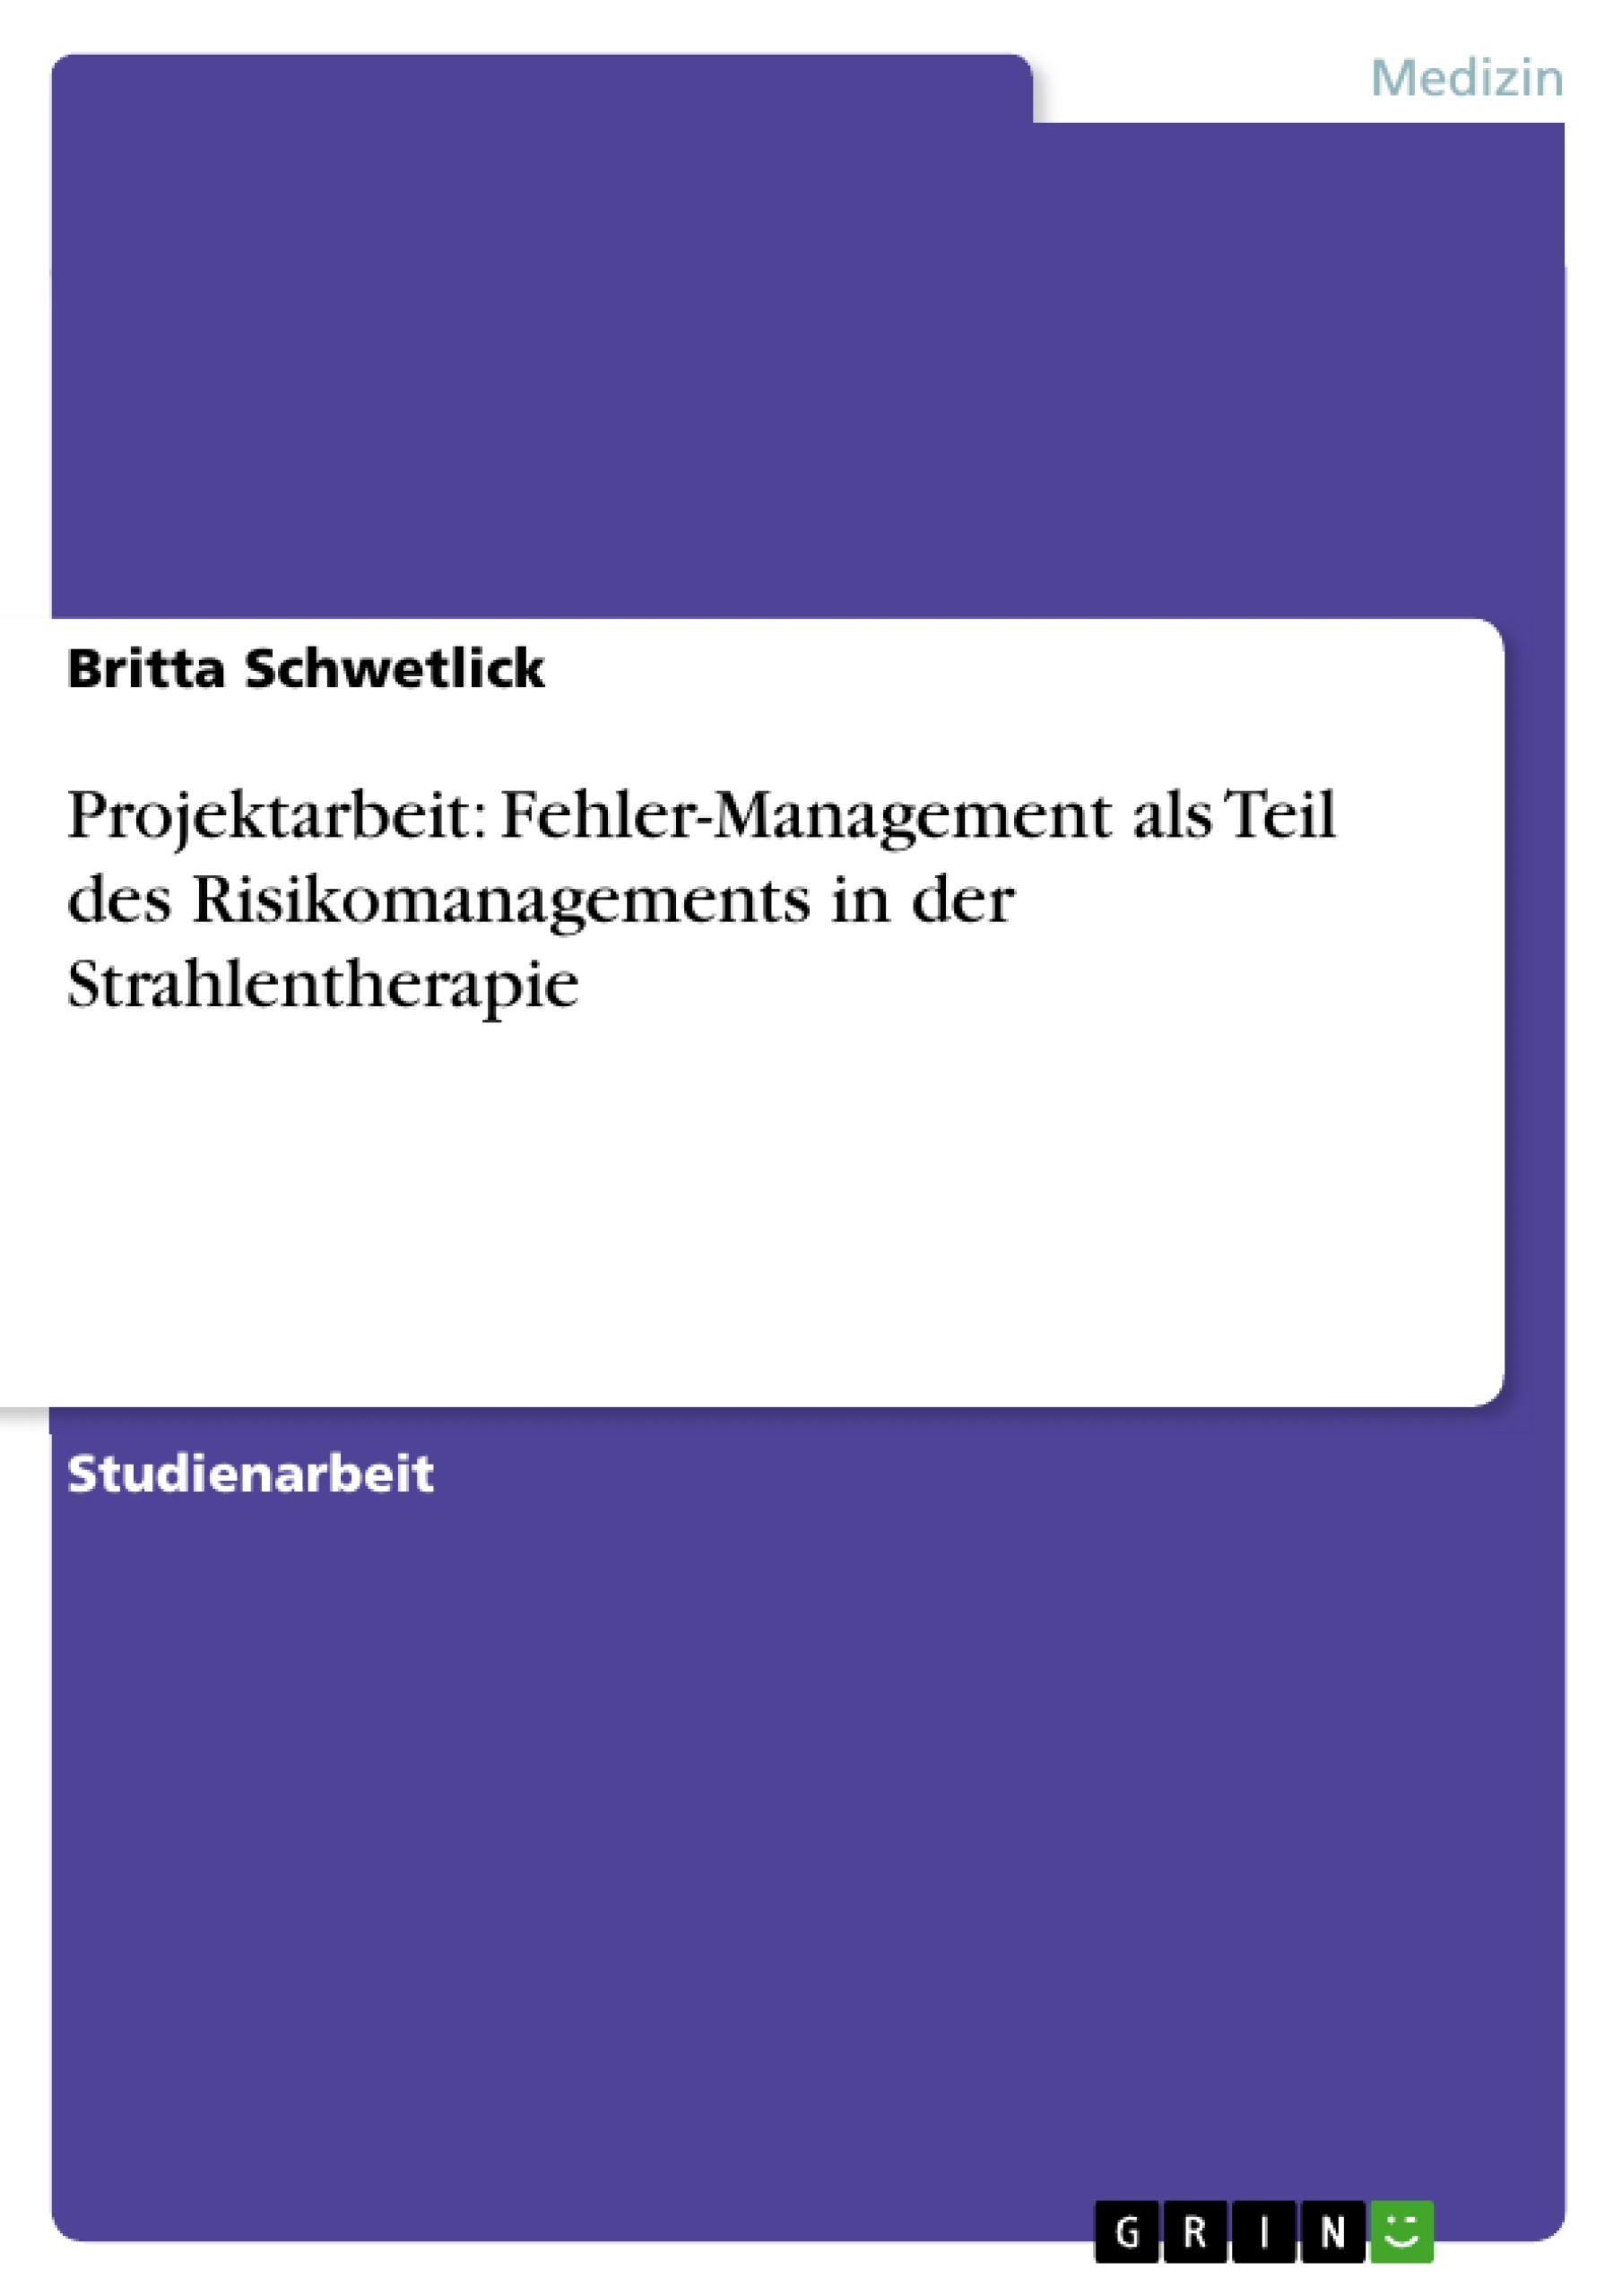 Título: Projektarbeit: Fehler-Management als Teil des Risikomanagements in der Strahlentherapie